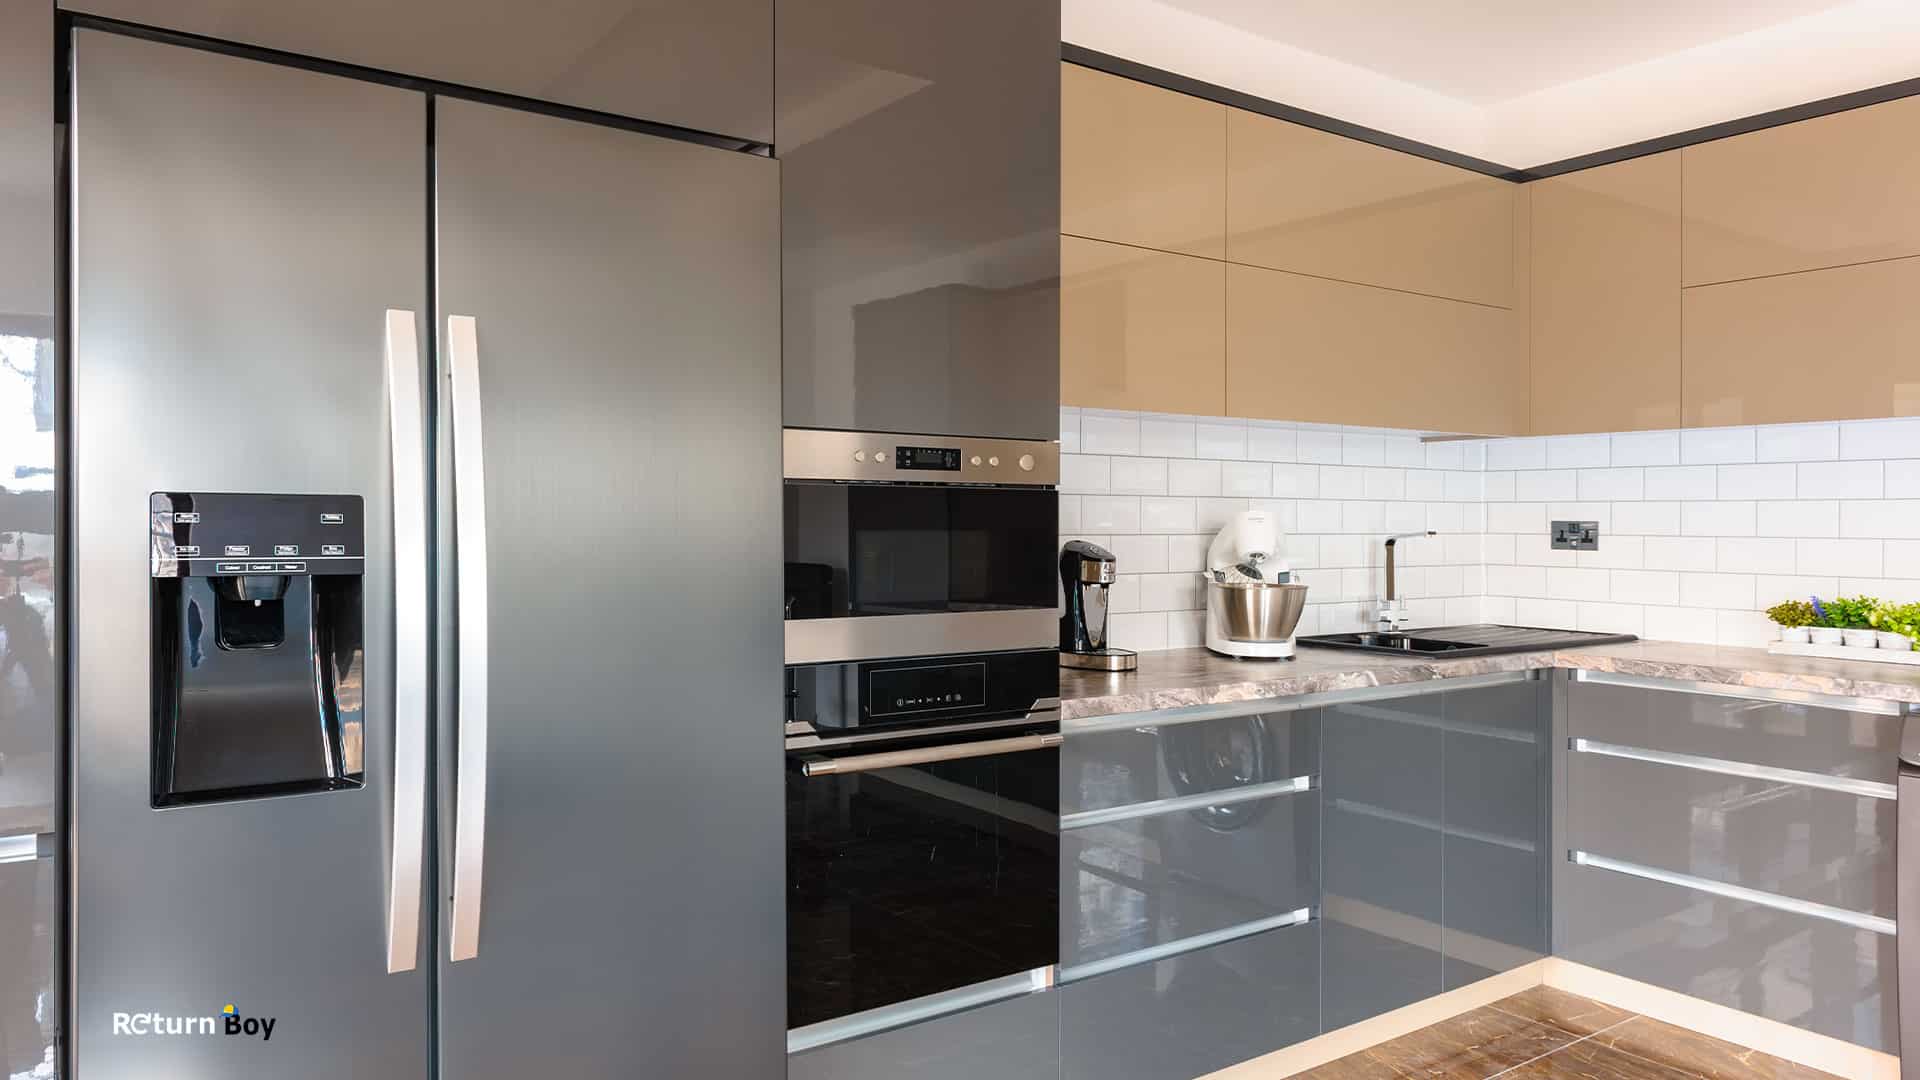 Appliances Direct refrigerator in kitchen